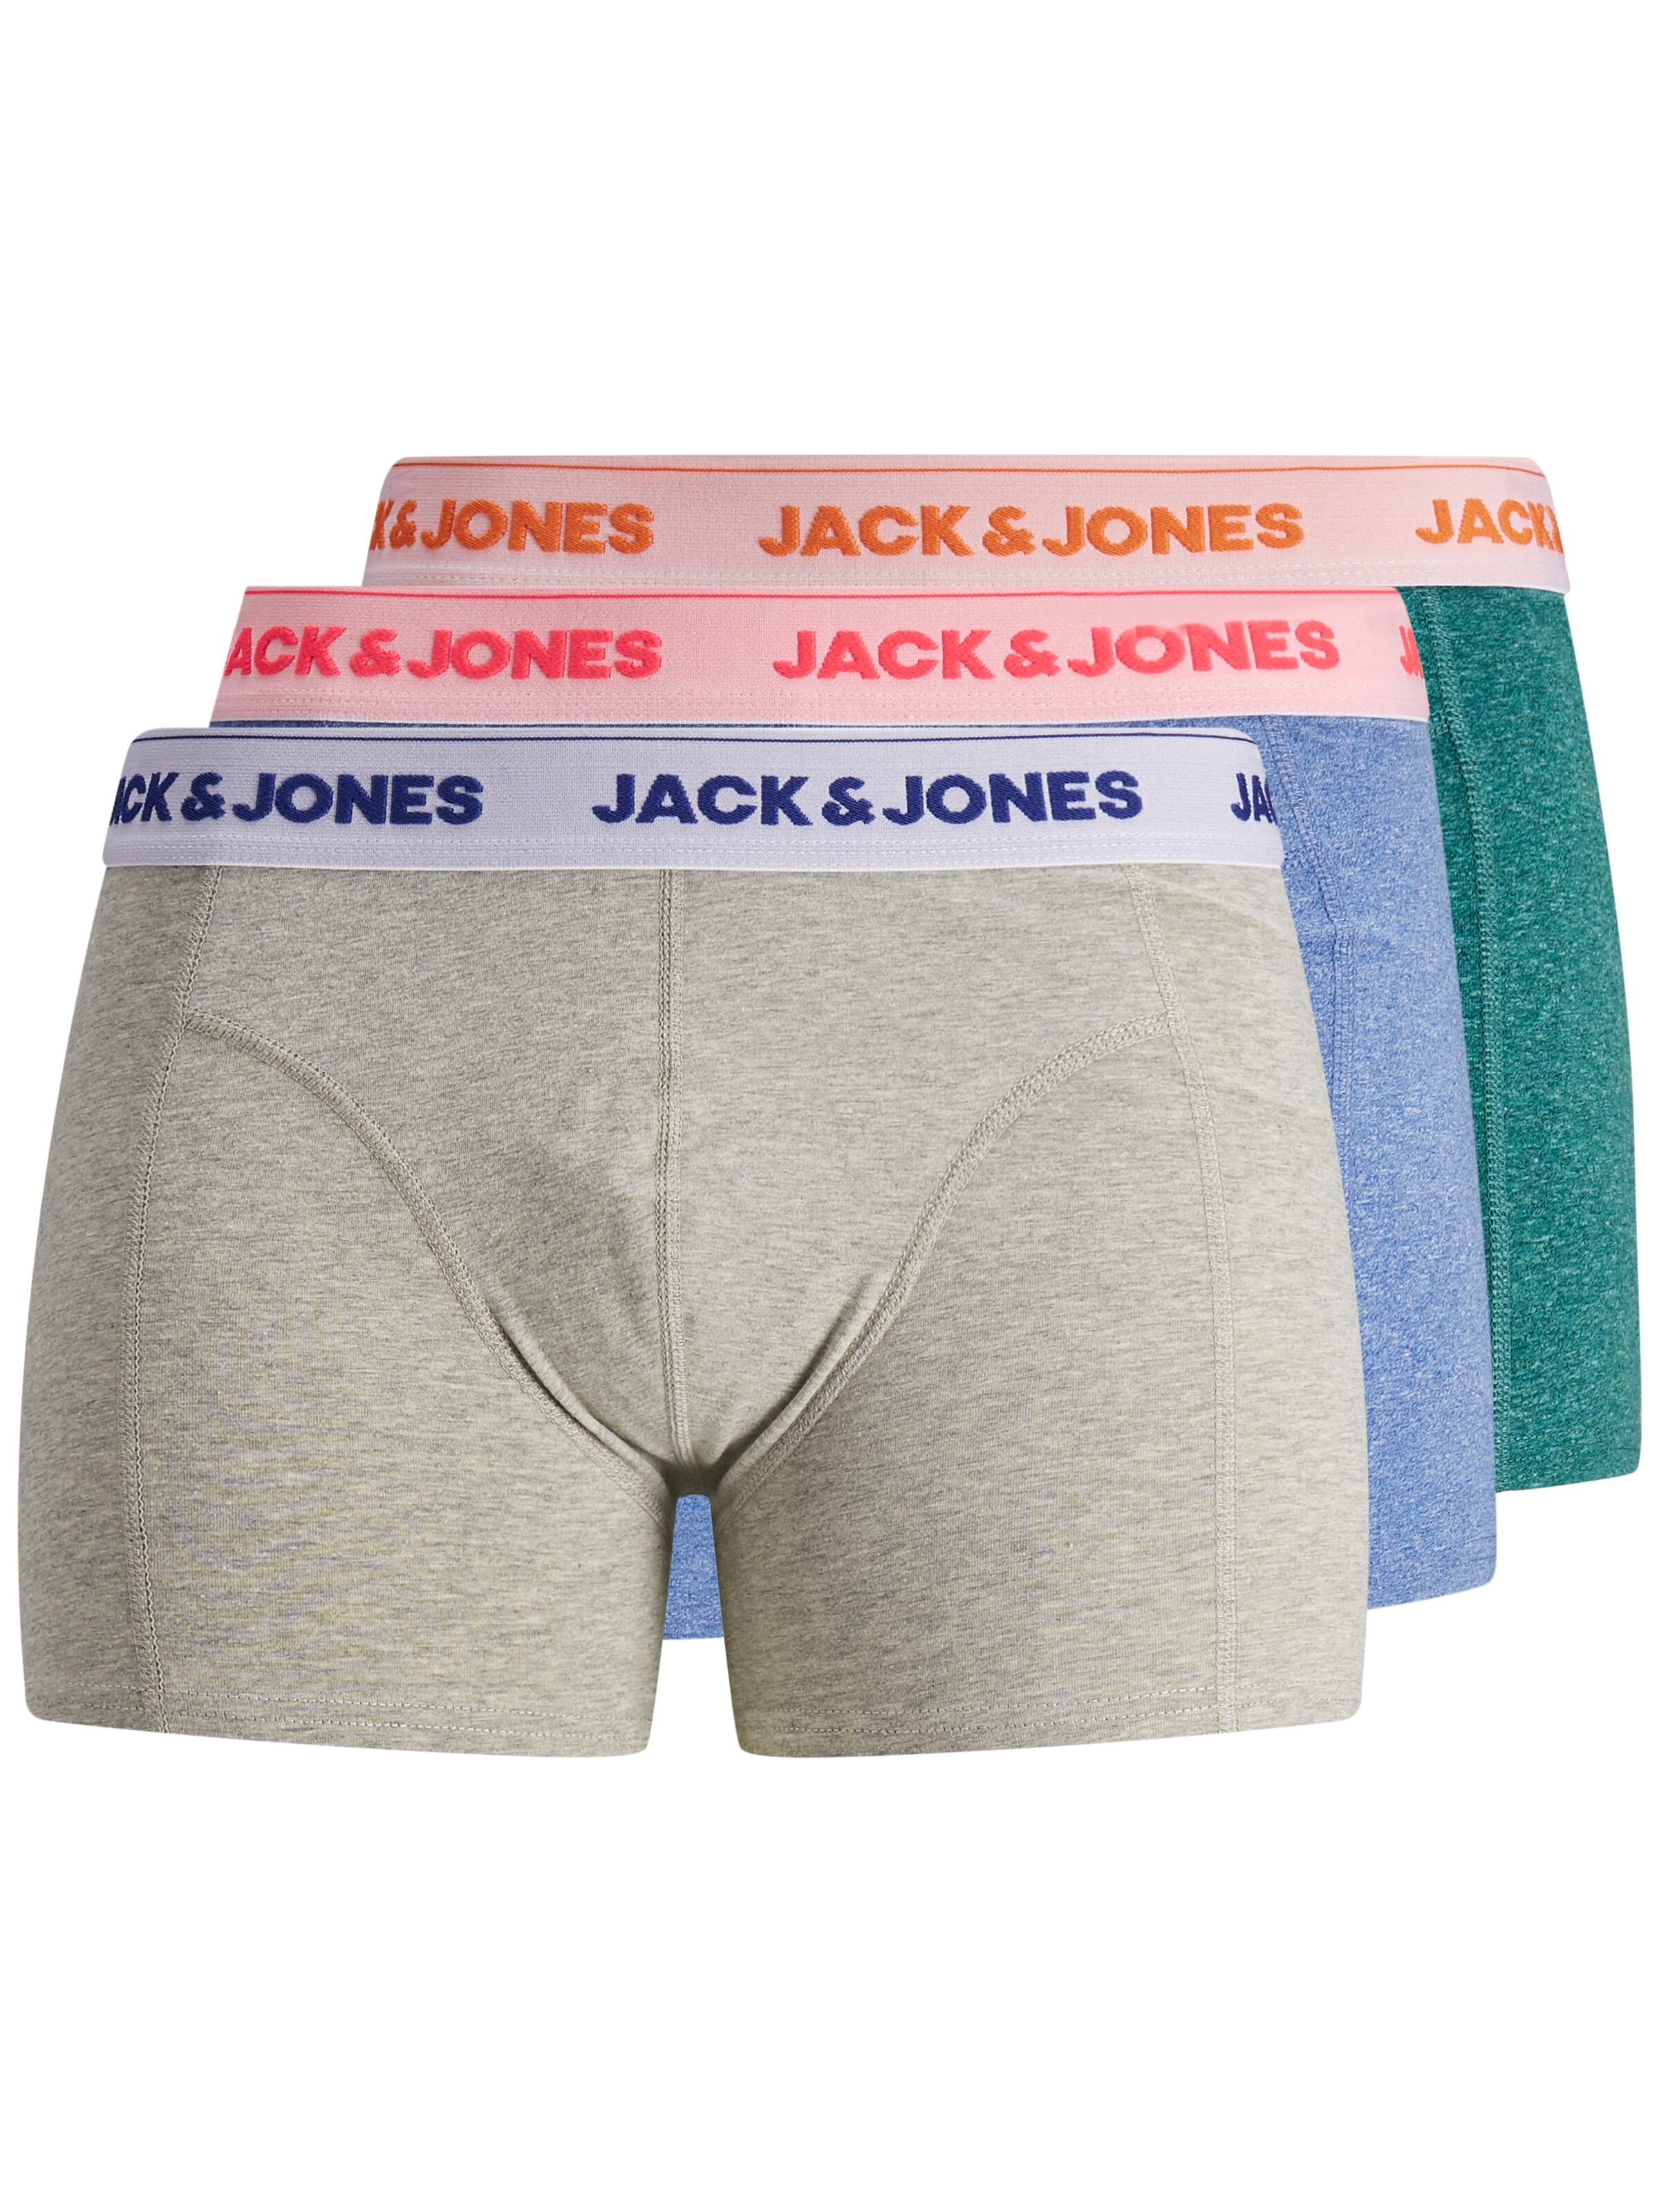 Männer Wäsche JACK & JONES Boxershorts in Mischfarben - EW02668